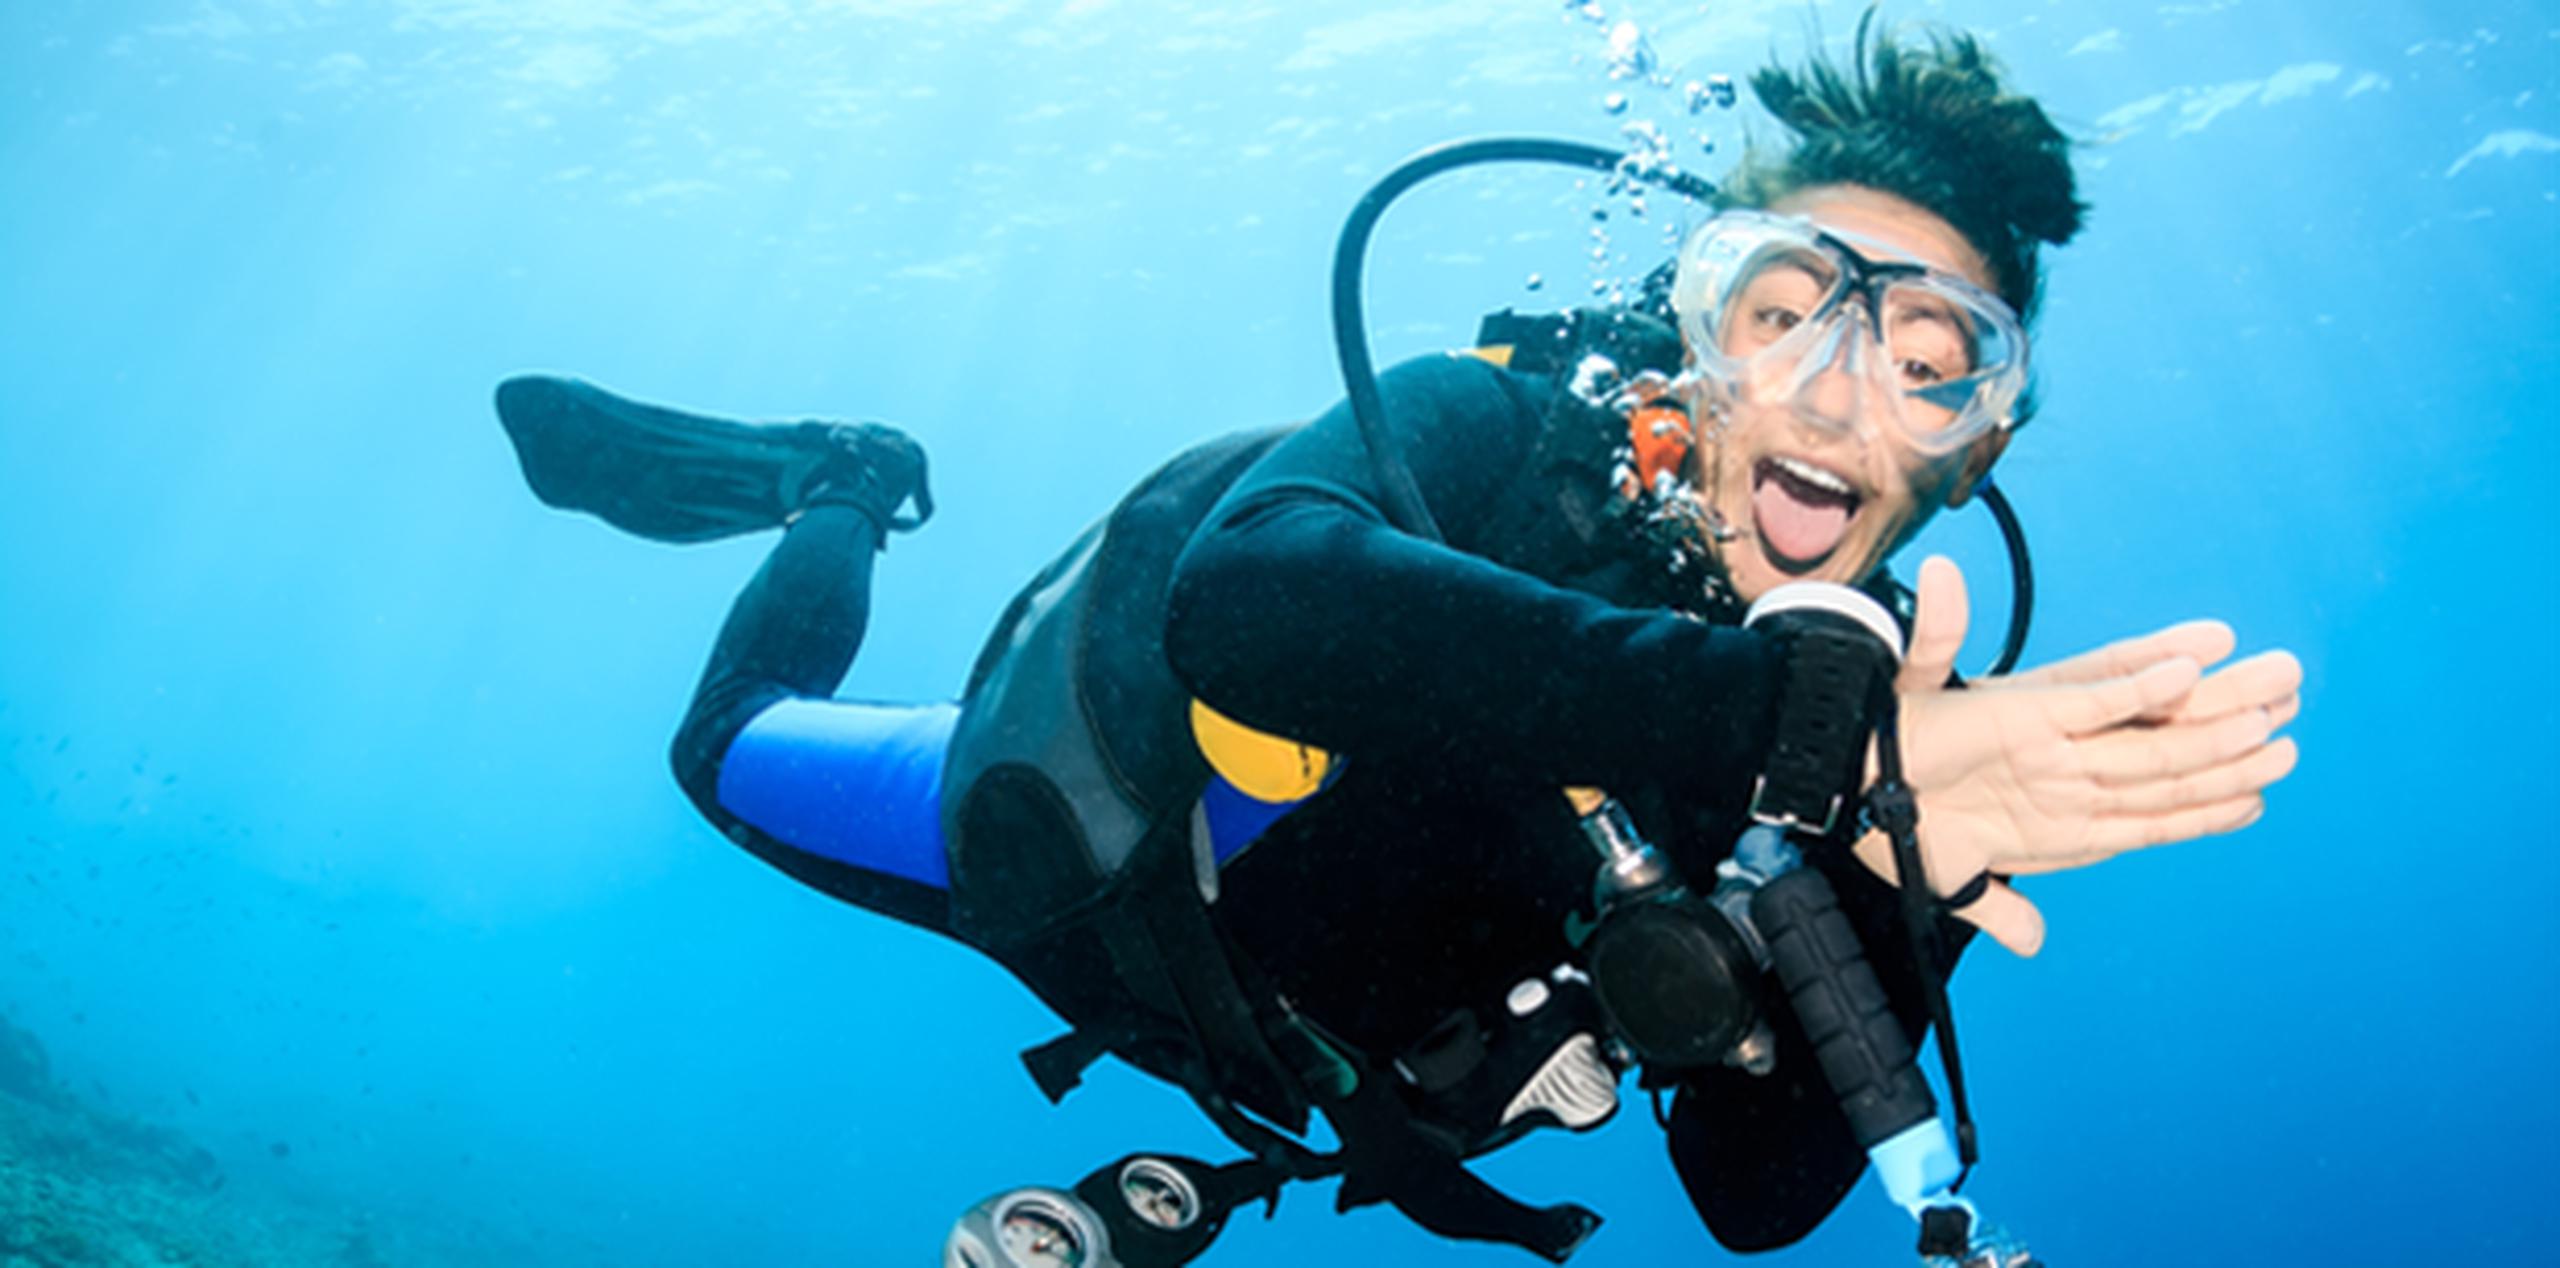 Los aficionados del buceo utilizan la medicina hiperbárica para combatir los malestares causados por la profundidad del mar. (Shutterstock)